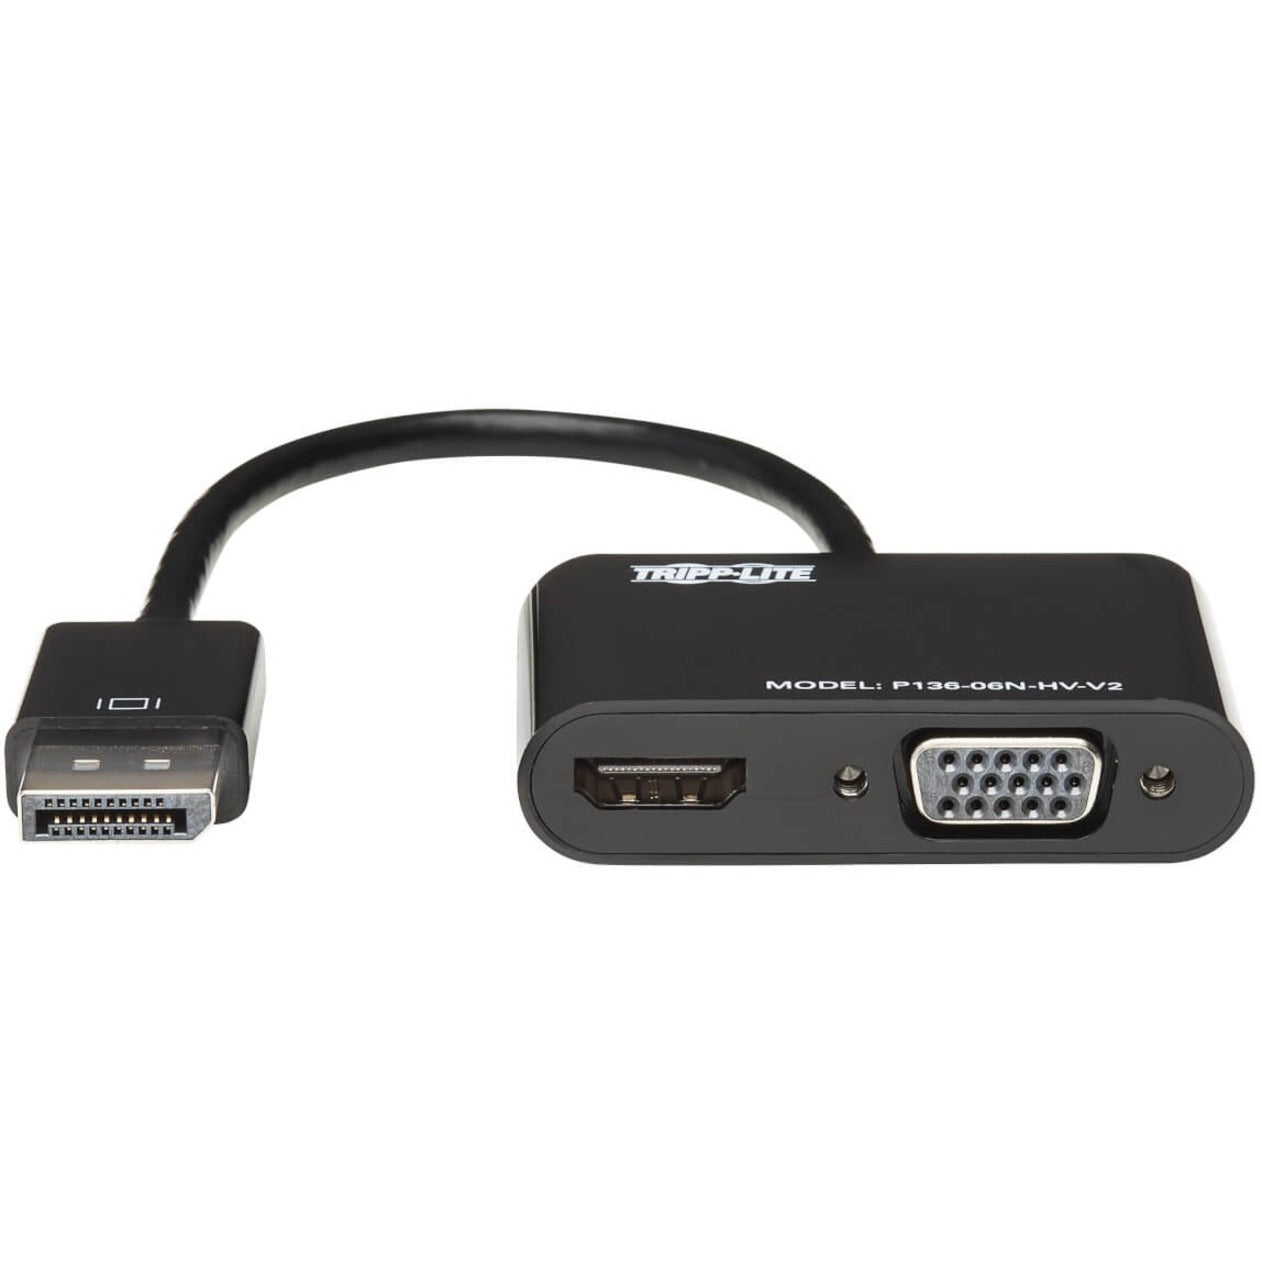 تريب لايت محول كل في واحد P136-06N-HV-V2 من DisplayPort 1.2 إلى VGA/HDMI، كابل HDMI بدقة 4K x 2K